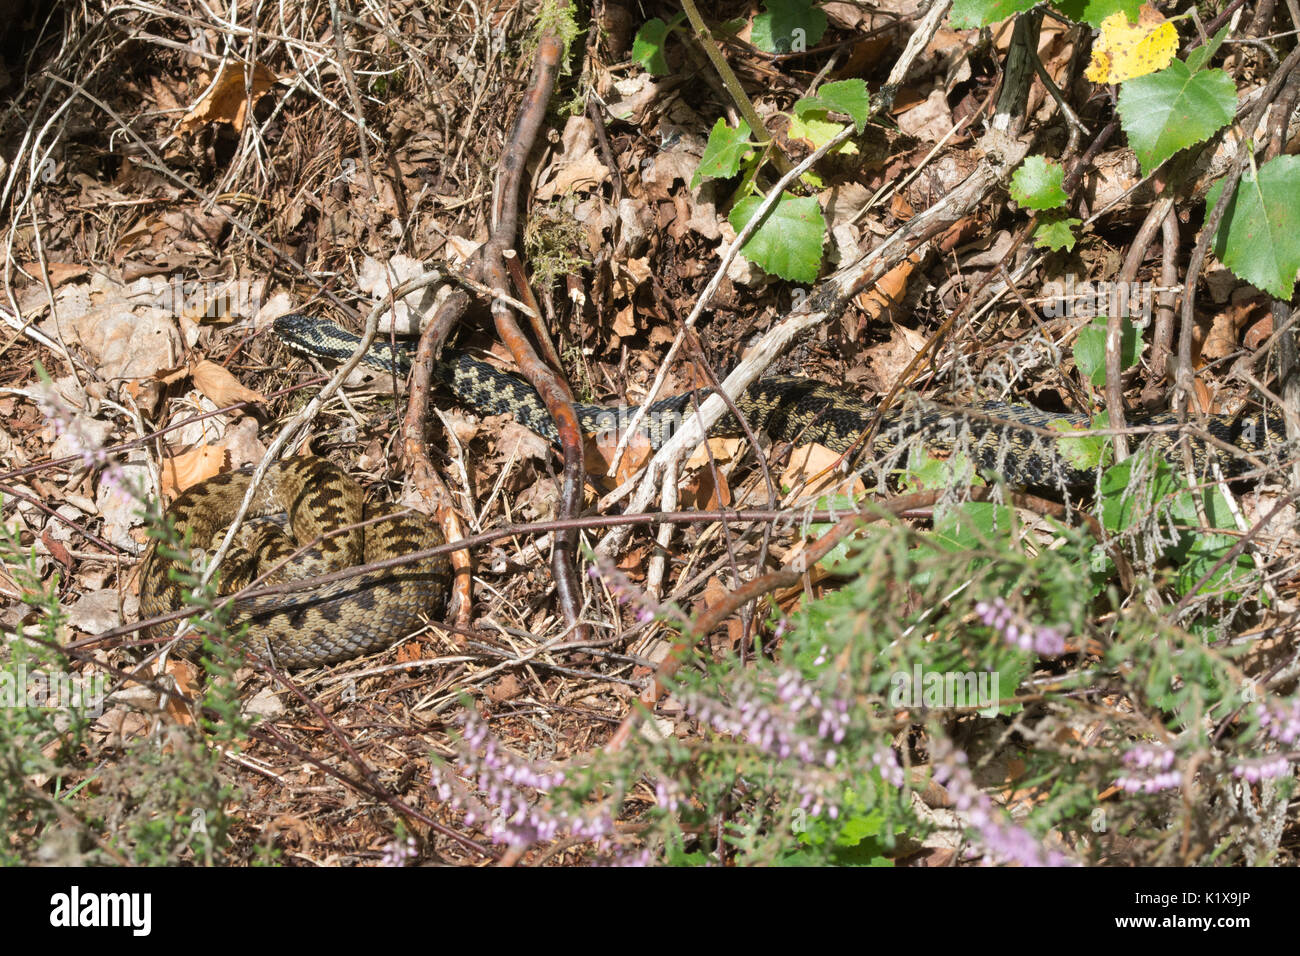 Zwei Addierer (Vipera berus), ein Männchen und ein Weibchen, im natürlichen Lebensraum in Surrey, Großbritannien sonnt Stockfoto